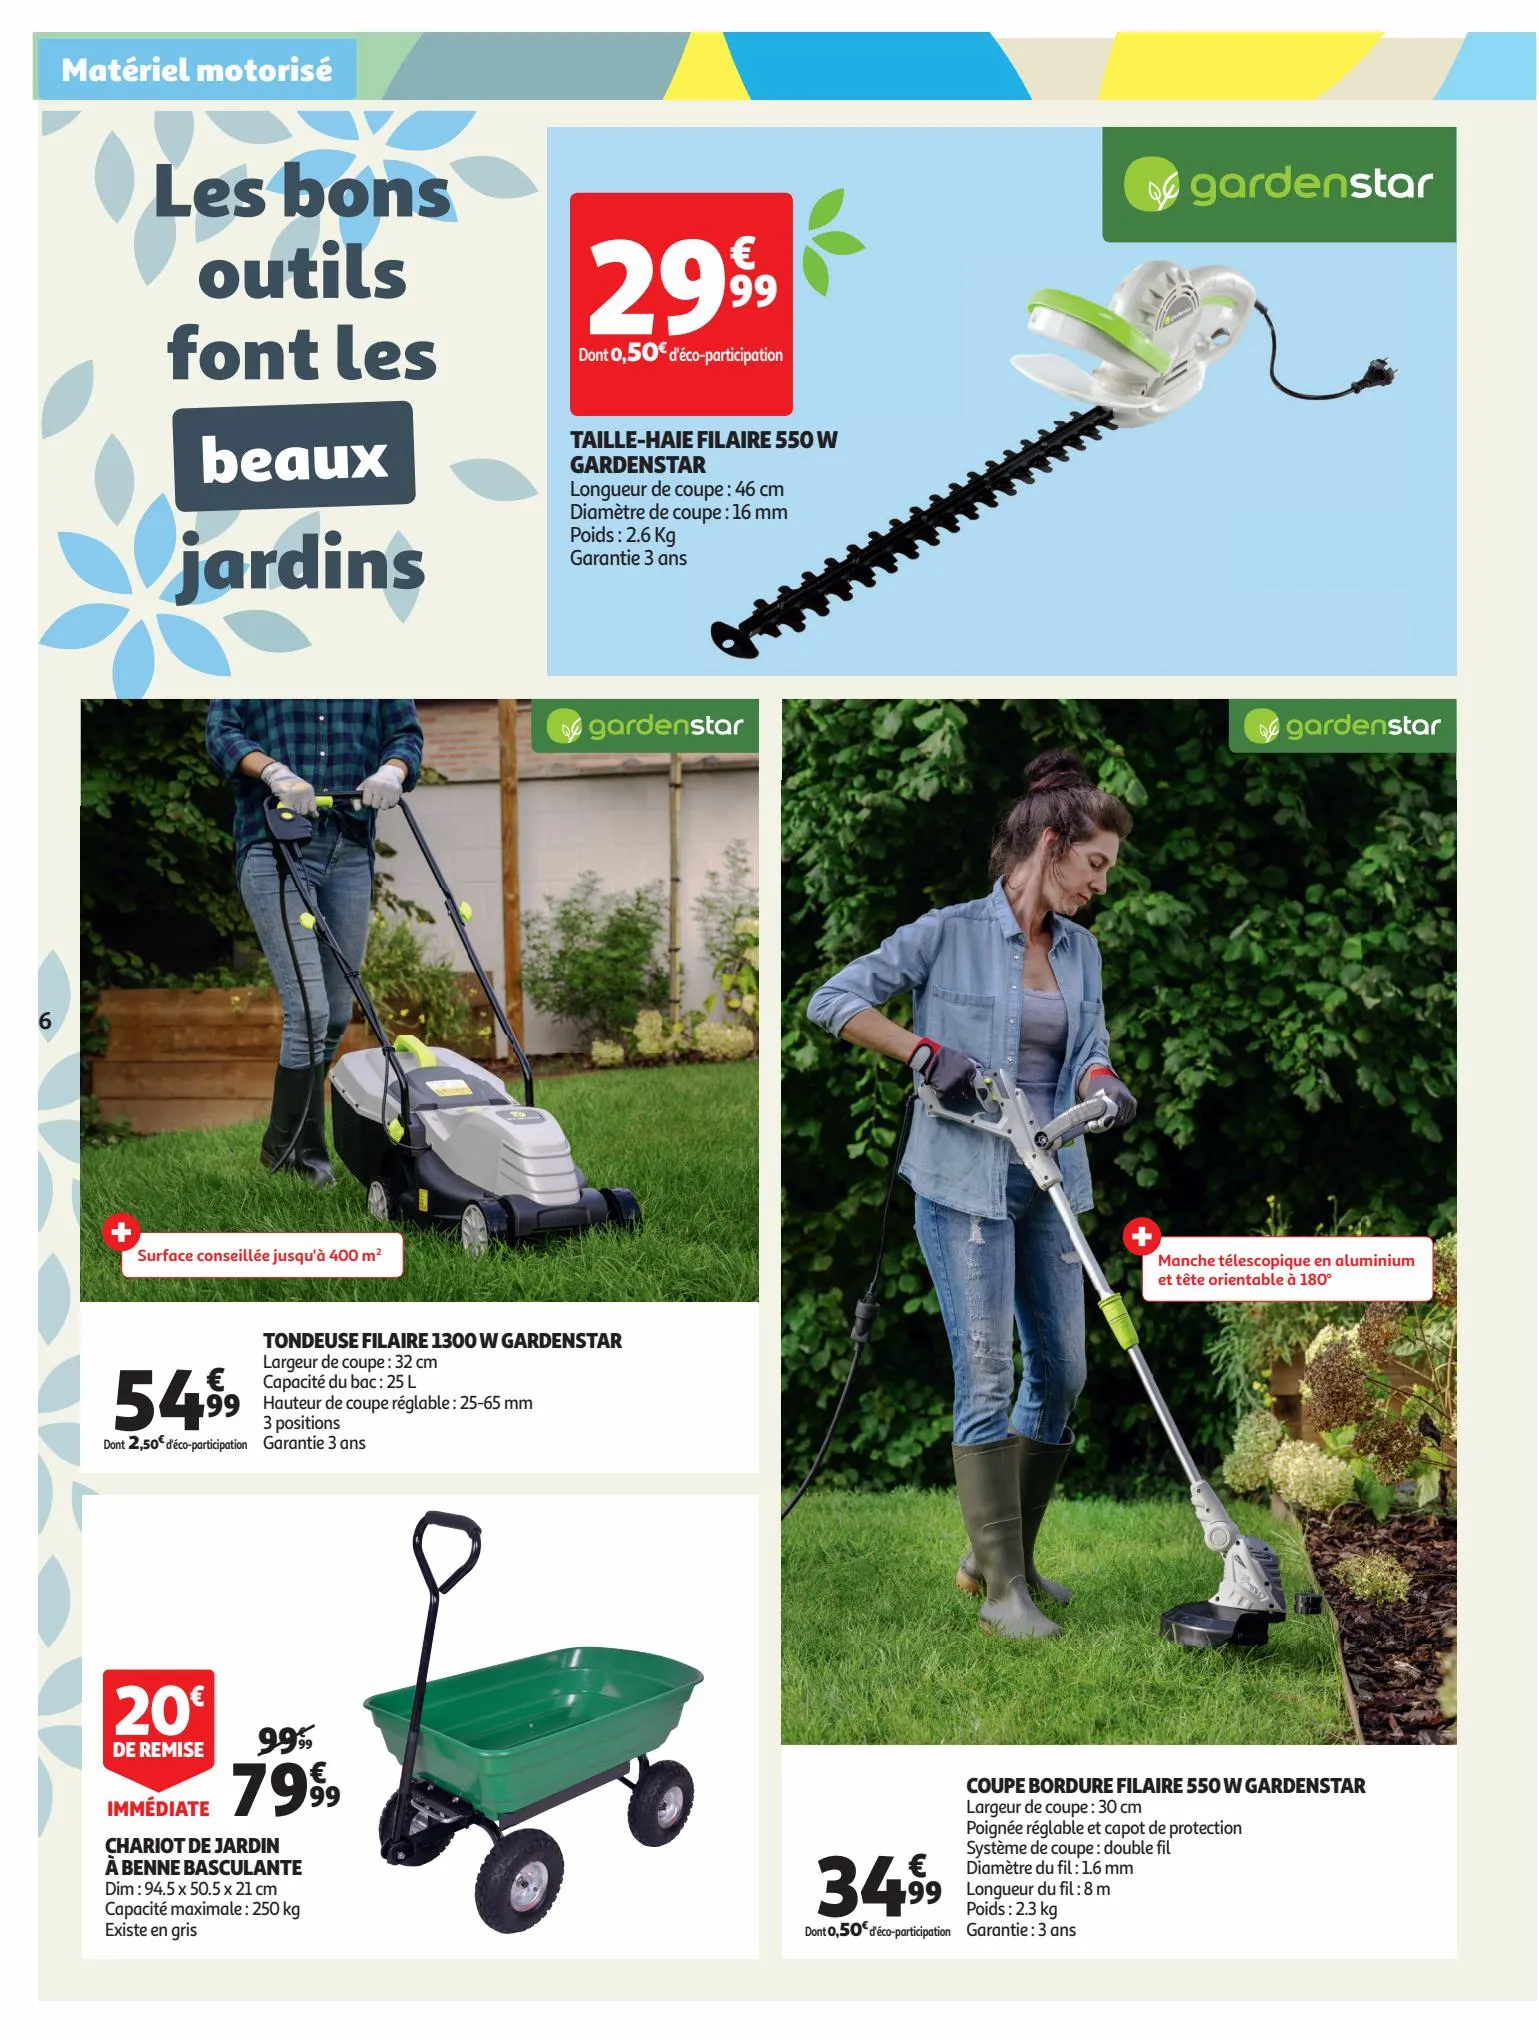 Catalogue C'est le moment de préparer votre jardin dans votre supermarché !, page 00006